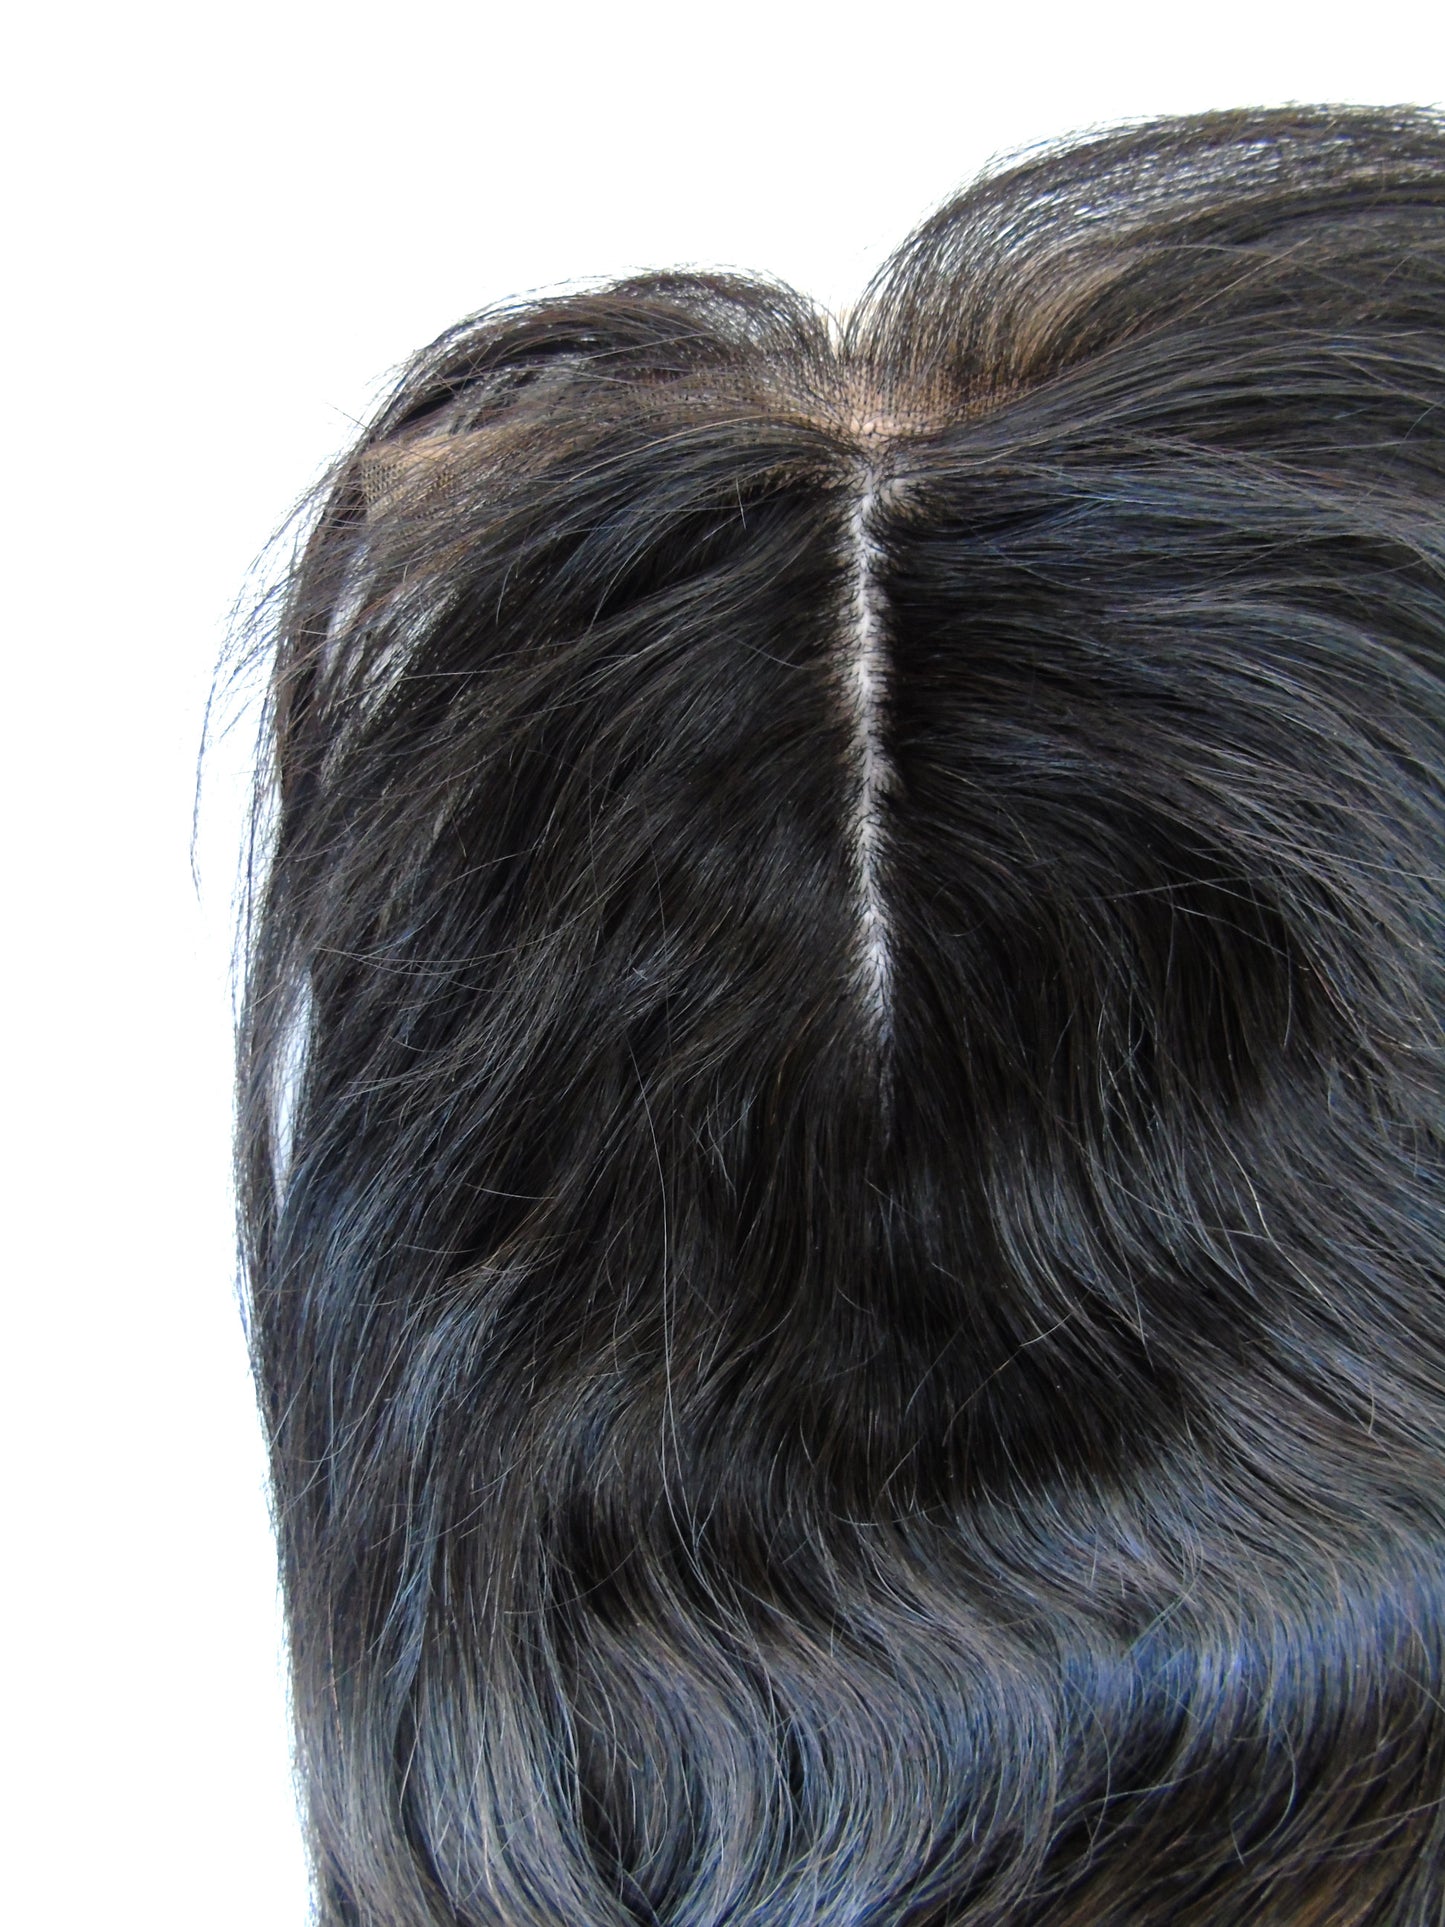 סגירה על בסיס משי בתולה ברזילאית, 6"x 9", 10 אינץ', ישר - רישום מותאם אישית-שיער ויופי בתולה, תוספות השיער הטובות ביותר, שיער אנושי אמיתי.